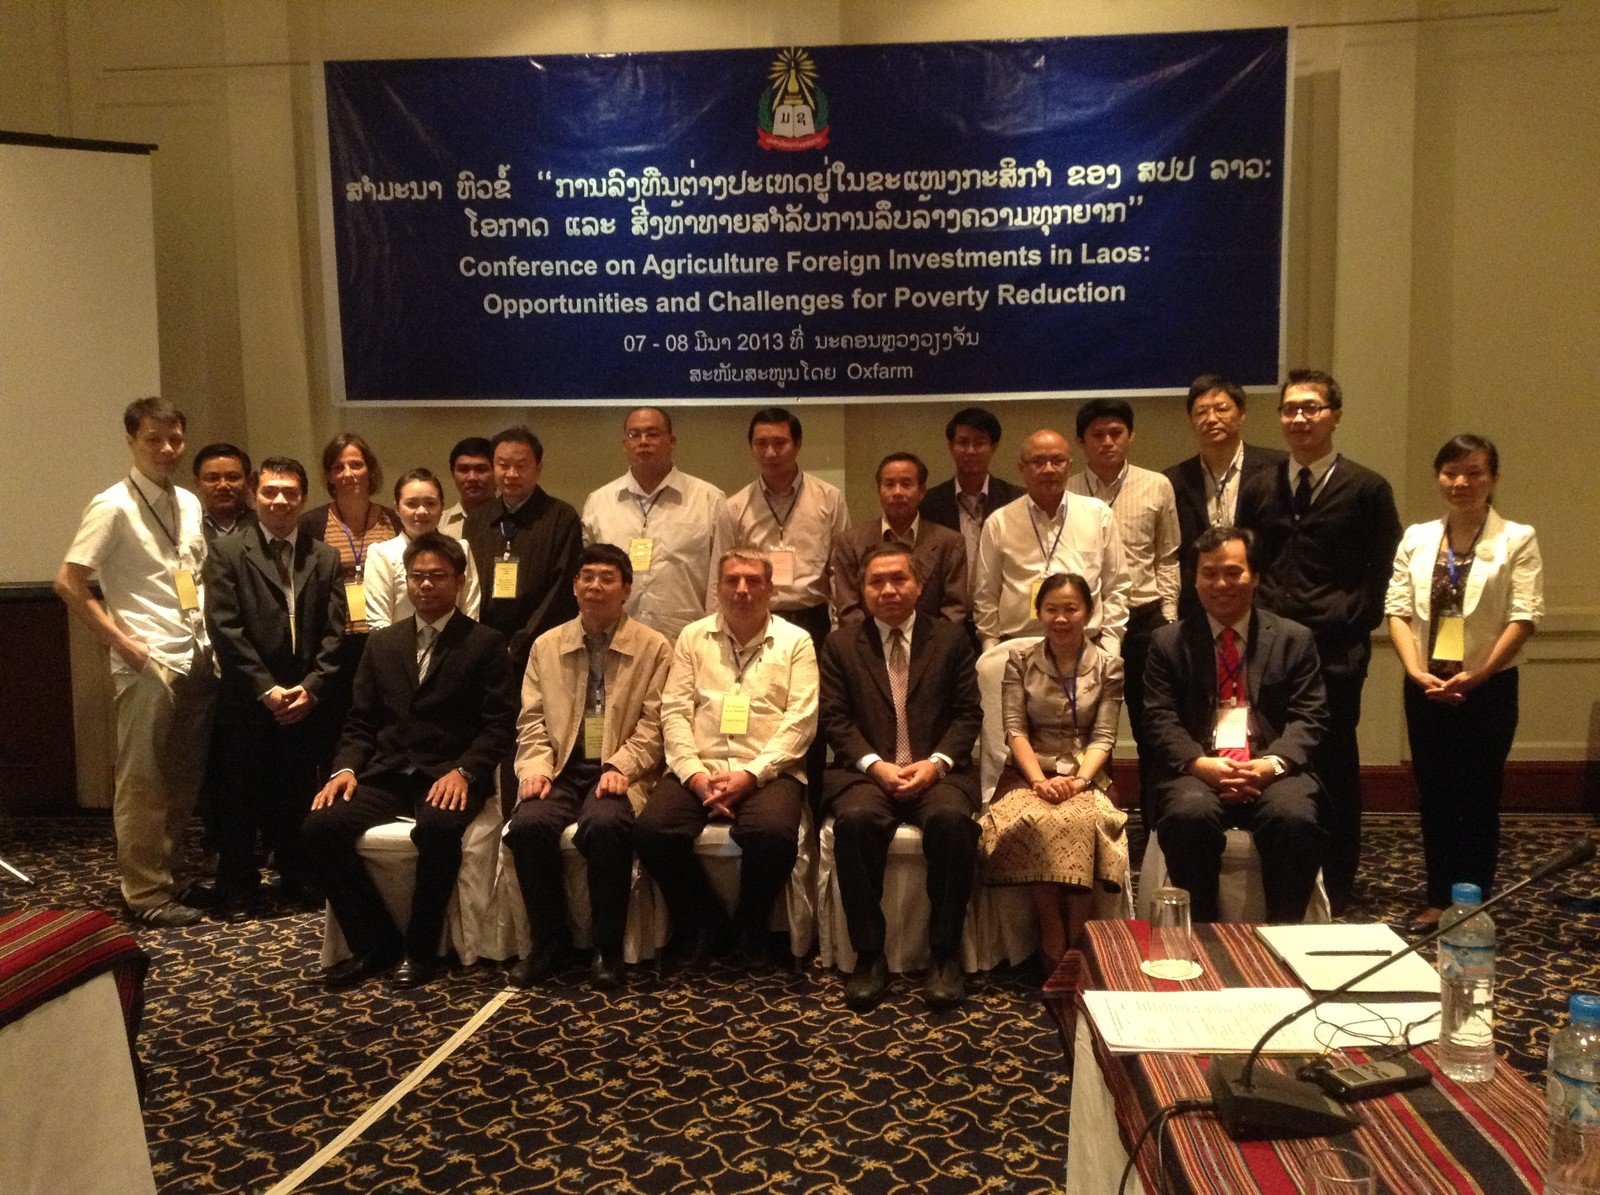 乐施会于3月7-8日在老挝首都永珍，和老挝国立大学农业系合作举办「老挝外商投资农业企业国际会议」，探讨老挝农业企业扩张的挑战和机遇。